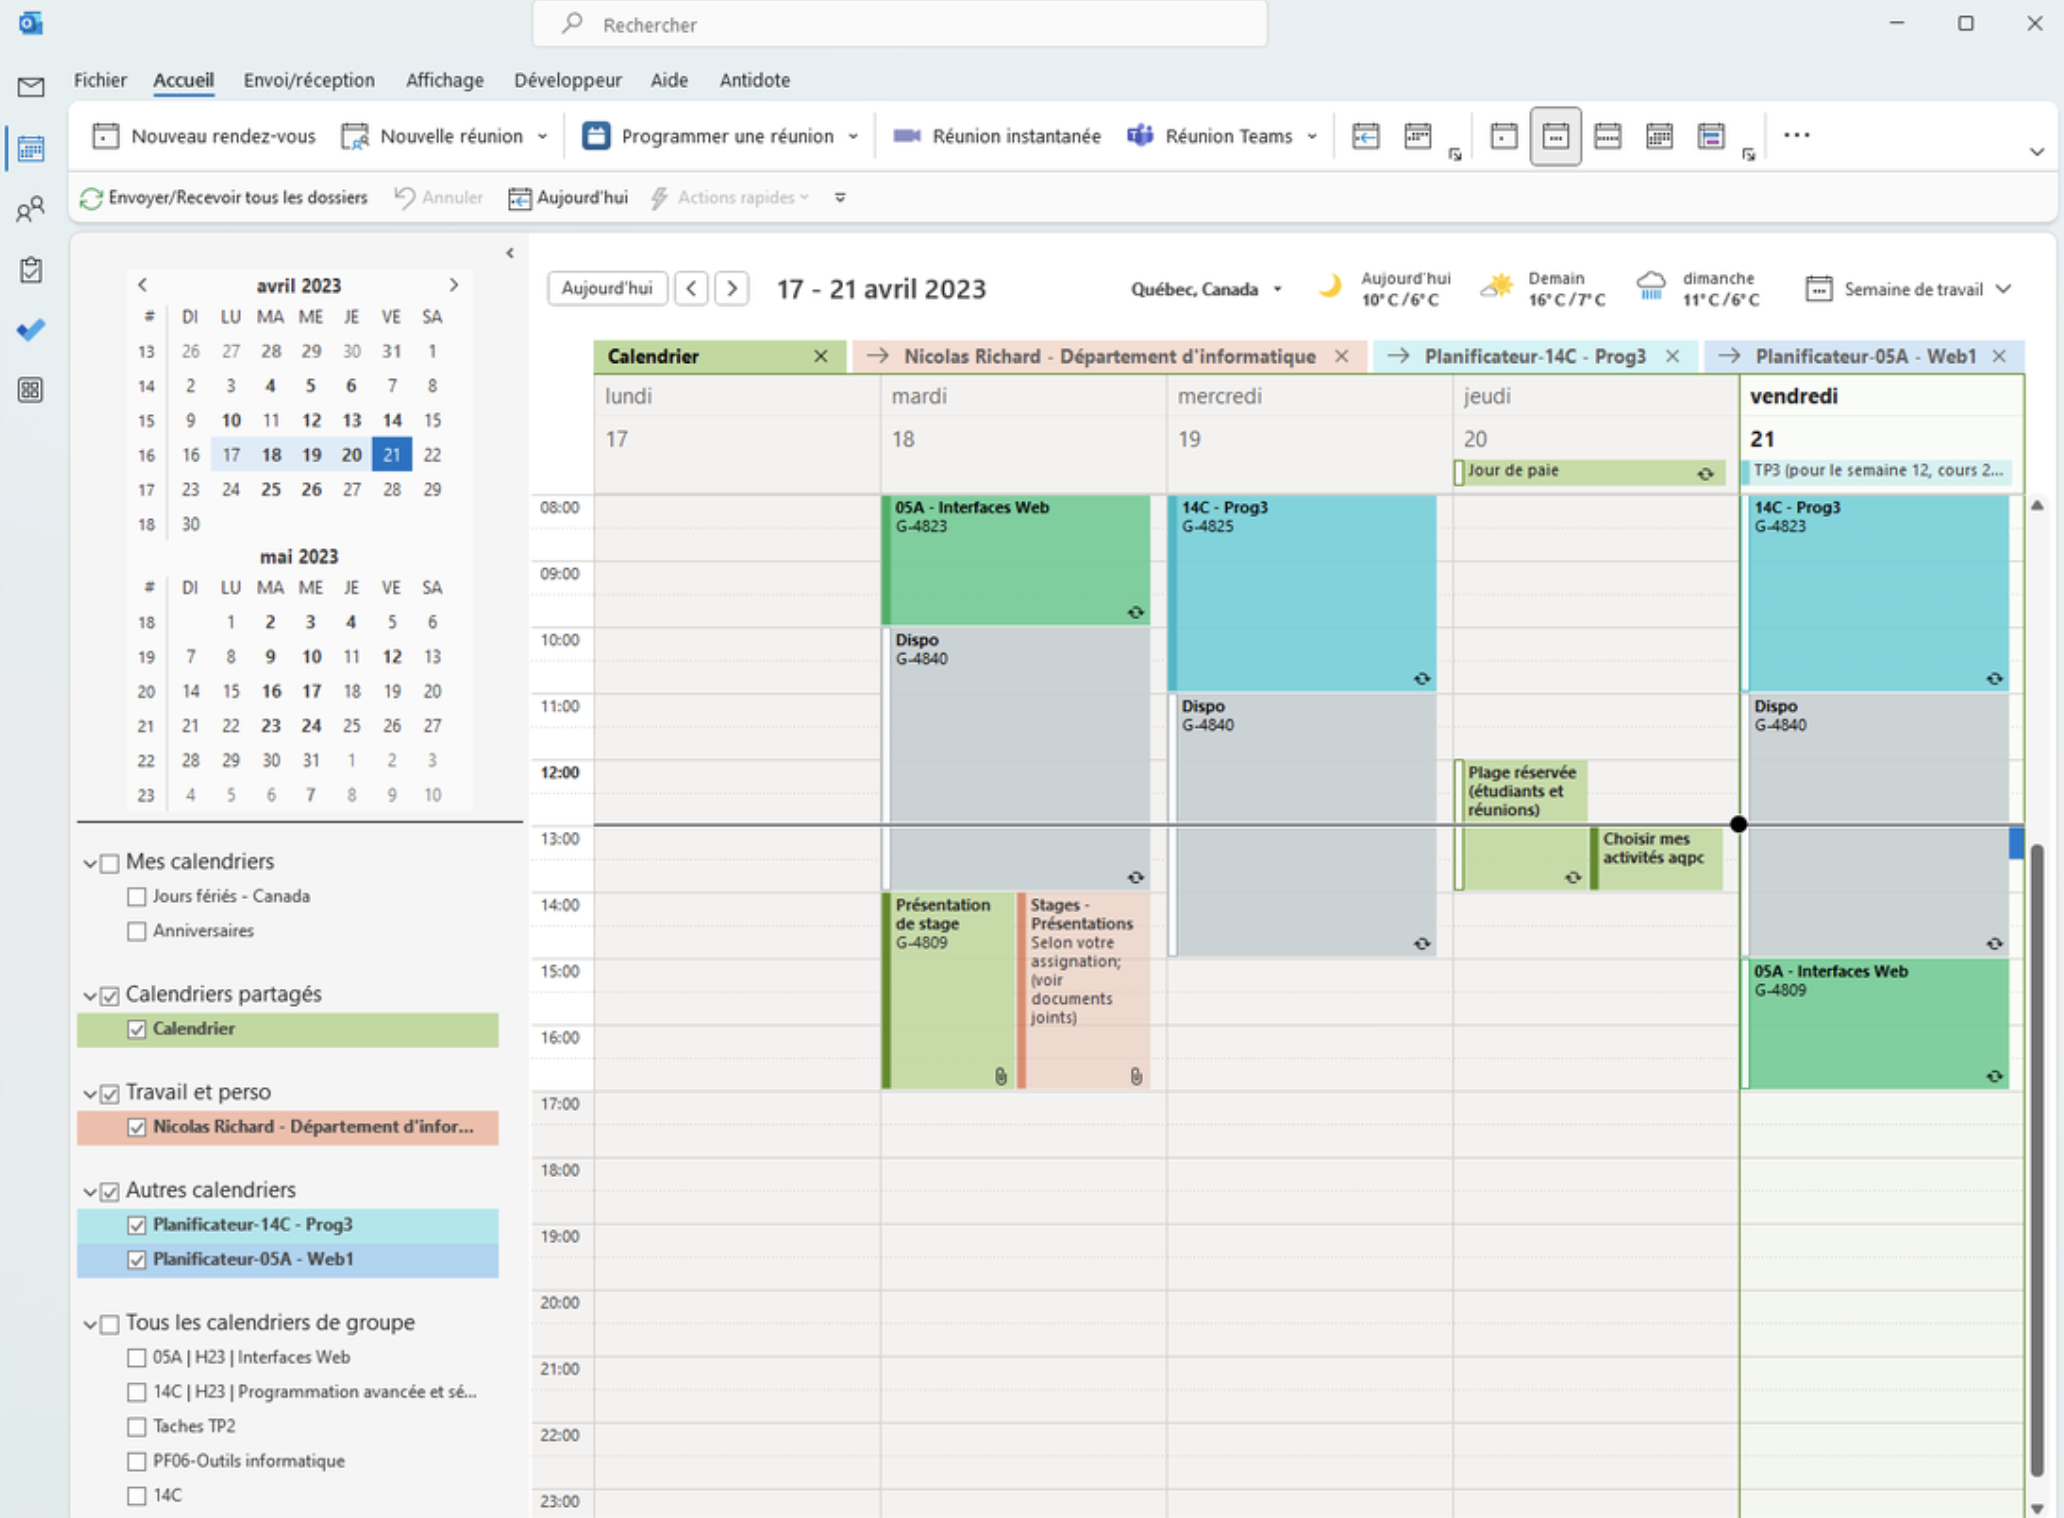 Vue de l'onglet «Calendrier» d'Outlook. 4 calendrier sont superposées, avec des couleurs distinctes: le calendrier de base de Martin Hardy (appelé «Calendrier», un calendrier nommé «Nicolas Richard - Département d'informatique» et 2 calendriers nommés «Planificateur - 14C - Prog3» et «Planificateur - 05A - Web1».